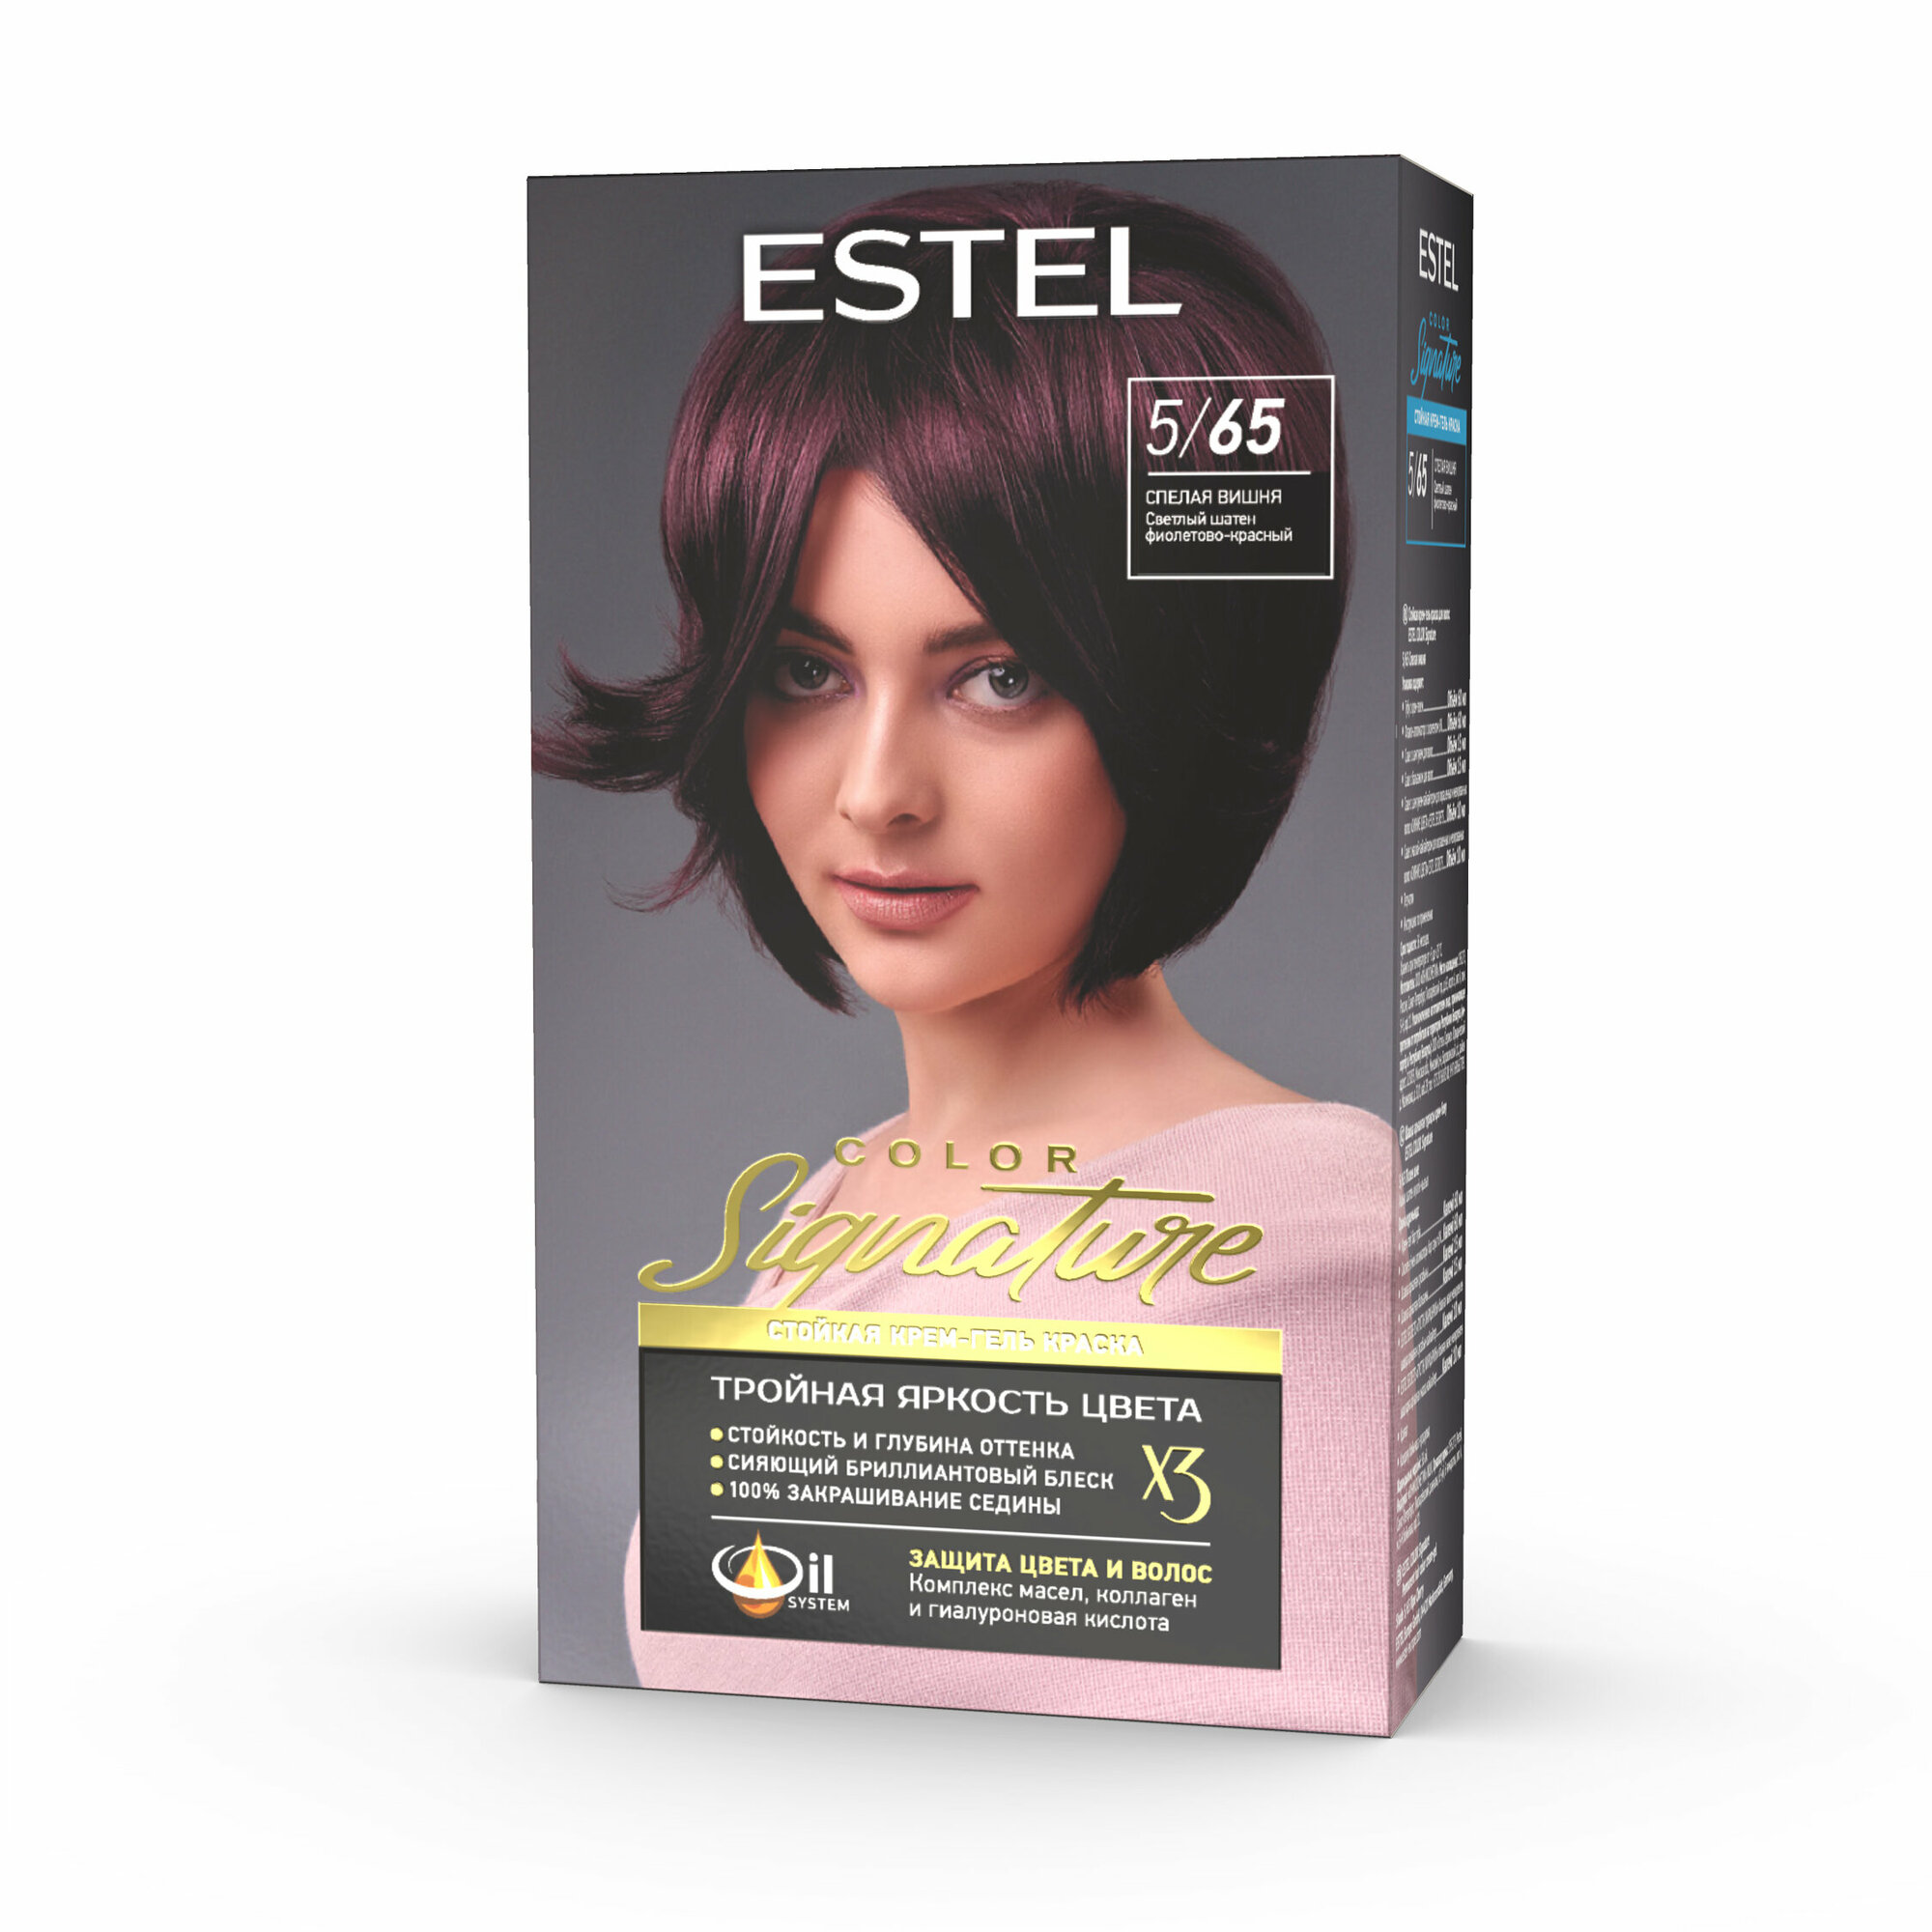 Крем-гель краска Estel color signature стойкая для волос 5/65 спелая вишня